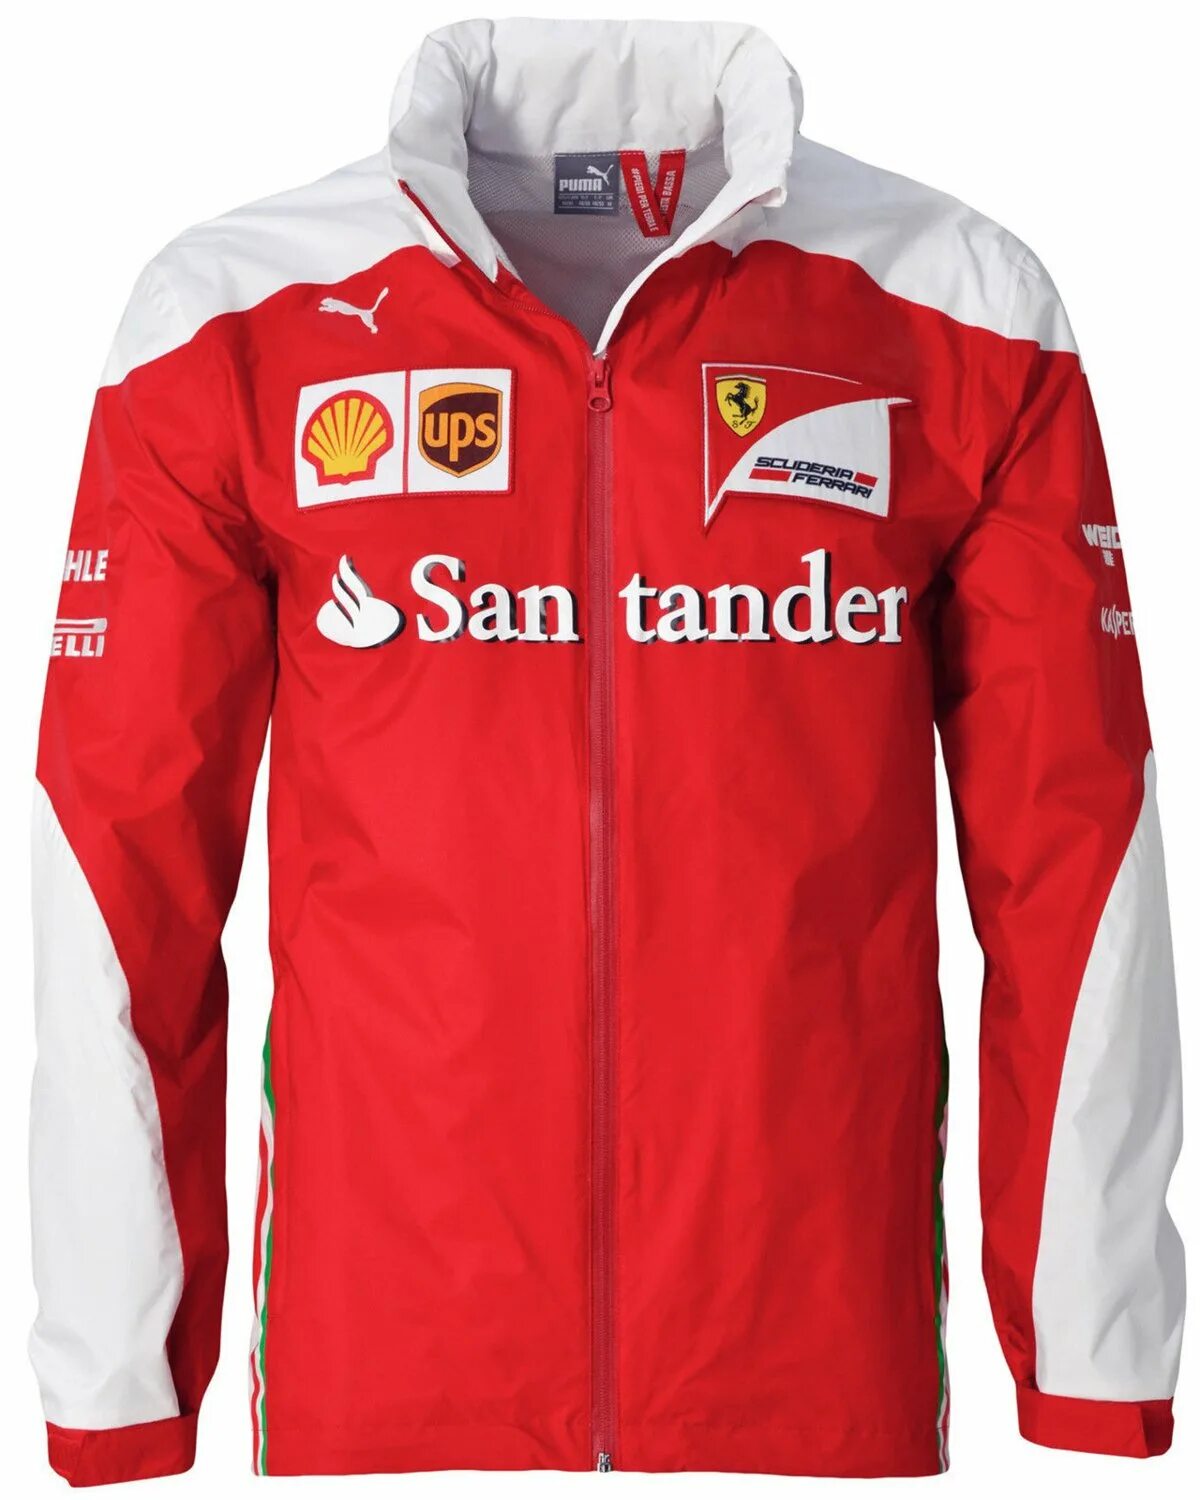 Первые одежда купить. Куртка мужская "Scuderia Ferrari" Team Jacket. Пума Scuderia Ferrari куртка. Puma костюм Scuderia Ferrari. Puma Scuderia Ferrari одежда.